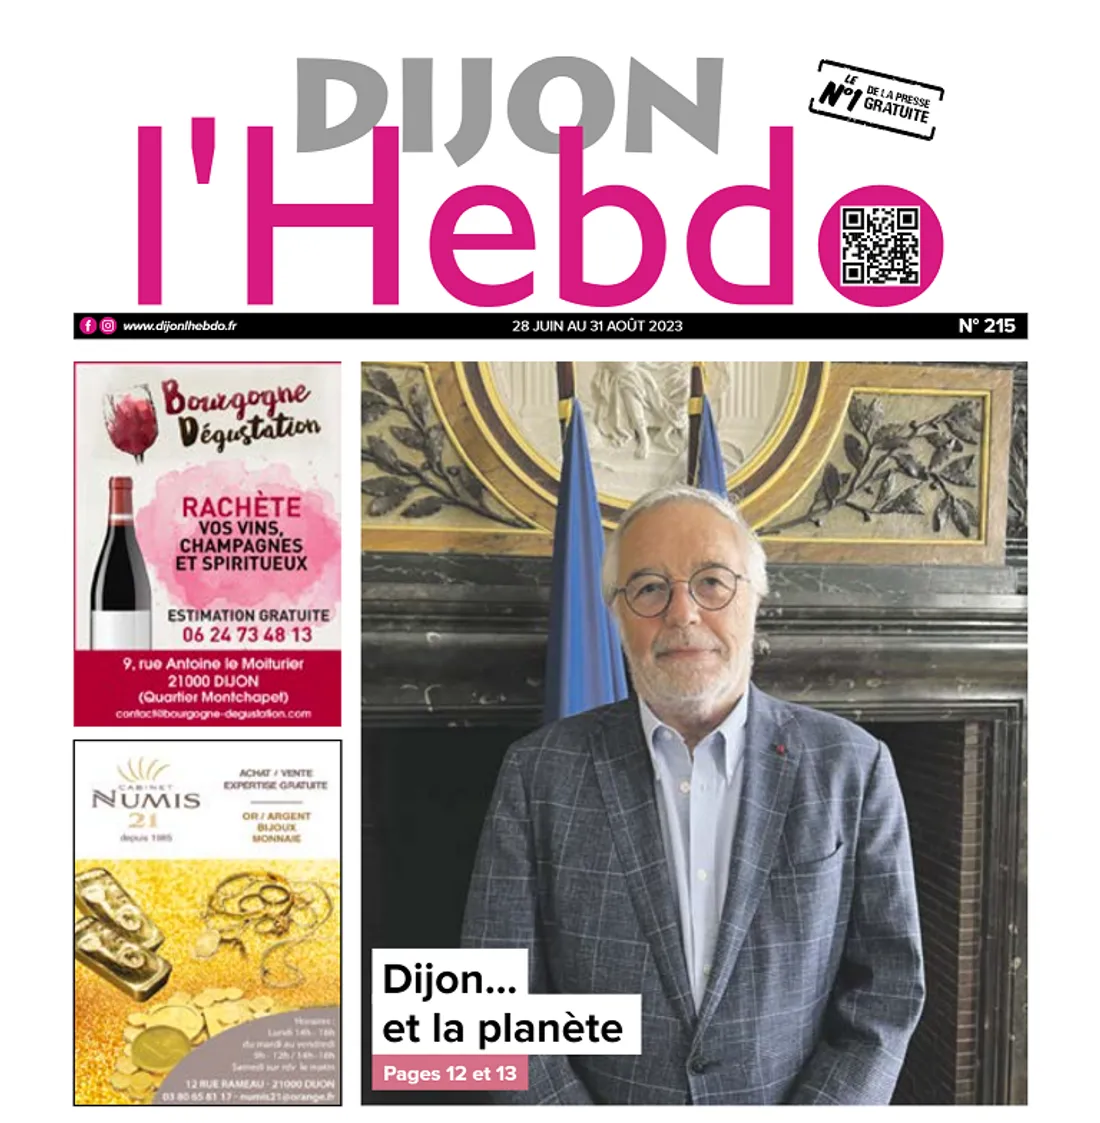 Le nouveau numéro de Dijon l'Hebdo est disponible